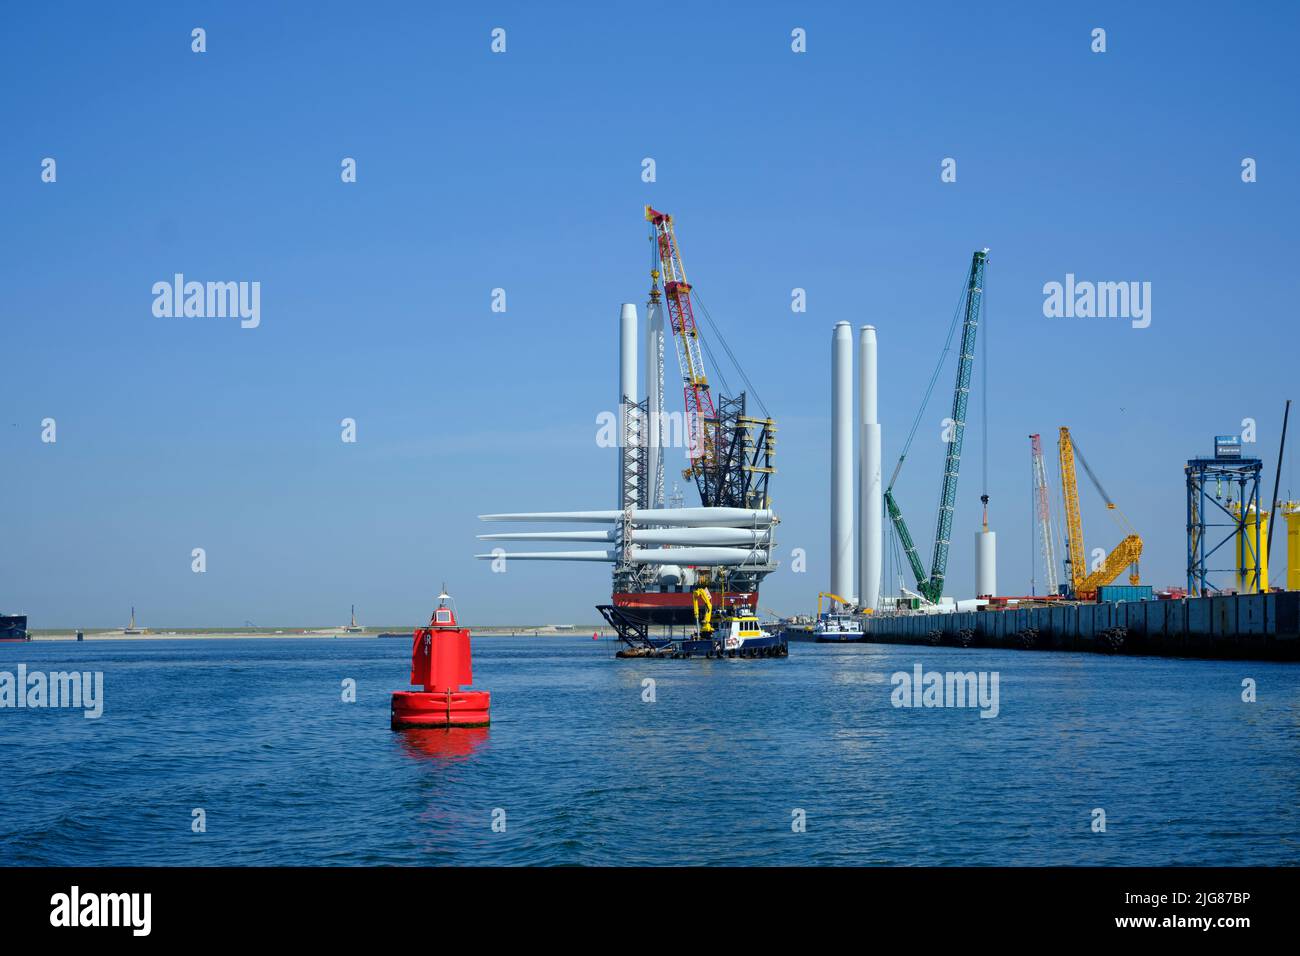 Ein großes Offshore-Schiff mit Kran und Hubschrauberlandeplatz ist im Hafen von Rotterdam vertäut. Ein Jack-up-Schiff für den Einsatz in der Offshore-Windindustrie Stockfoto